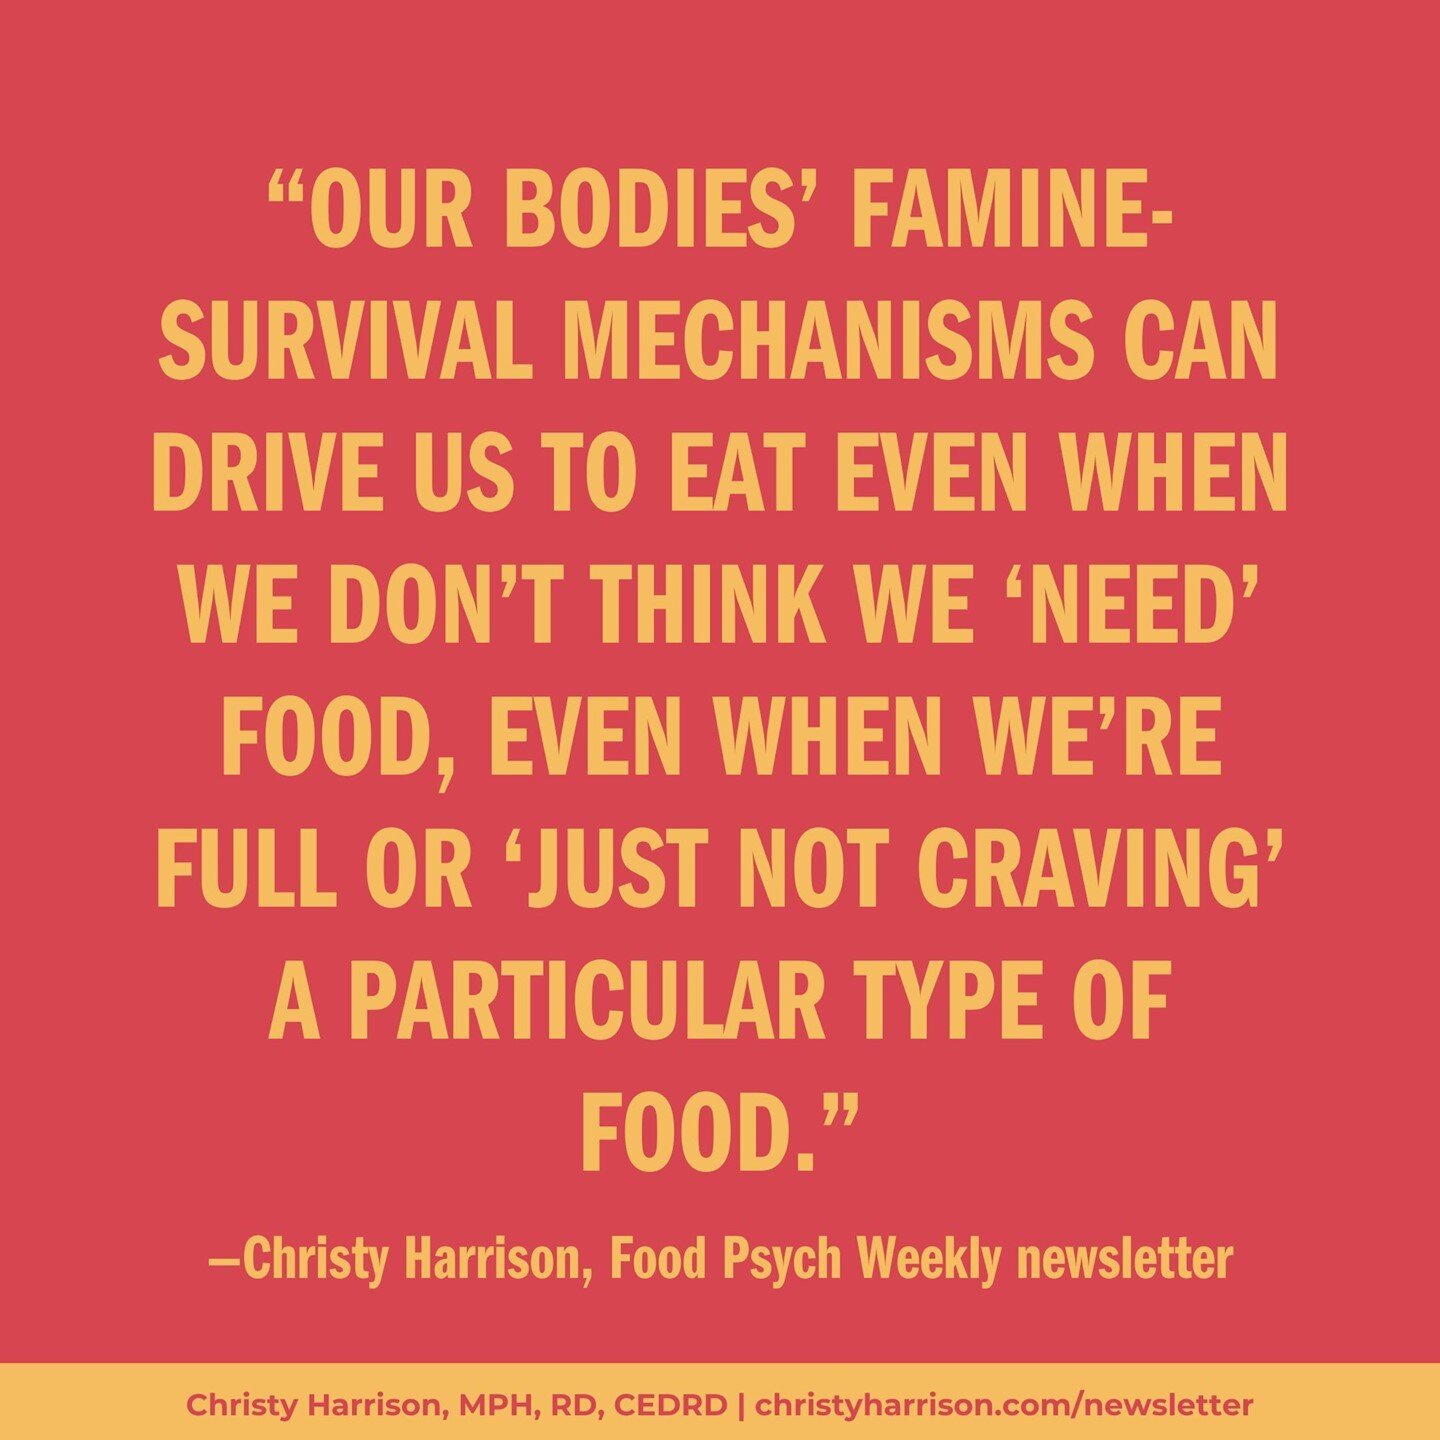 当我们节食和饮食紊乱时，我们的身体和大脑会认为这是饥荒。manbet万博提现他们不知道我们故意吃得少是因为别人告诉我们这是健康的。他们也知道我